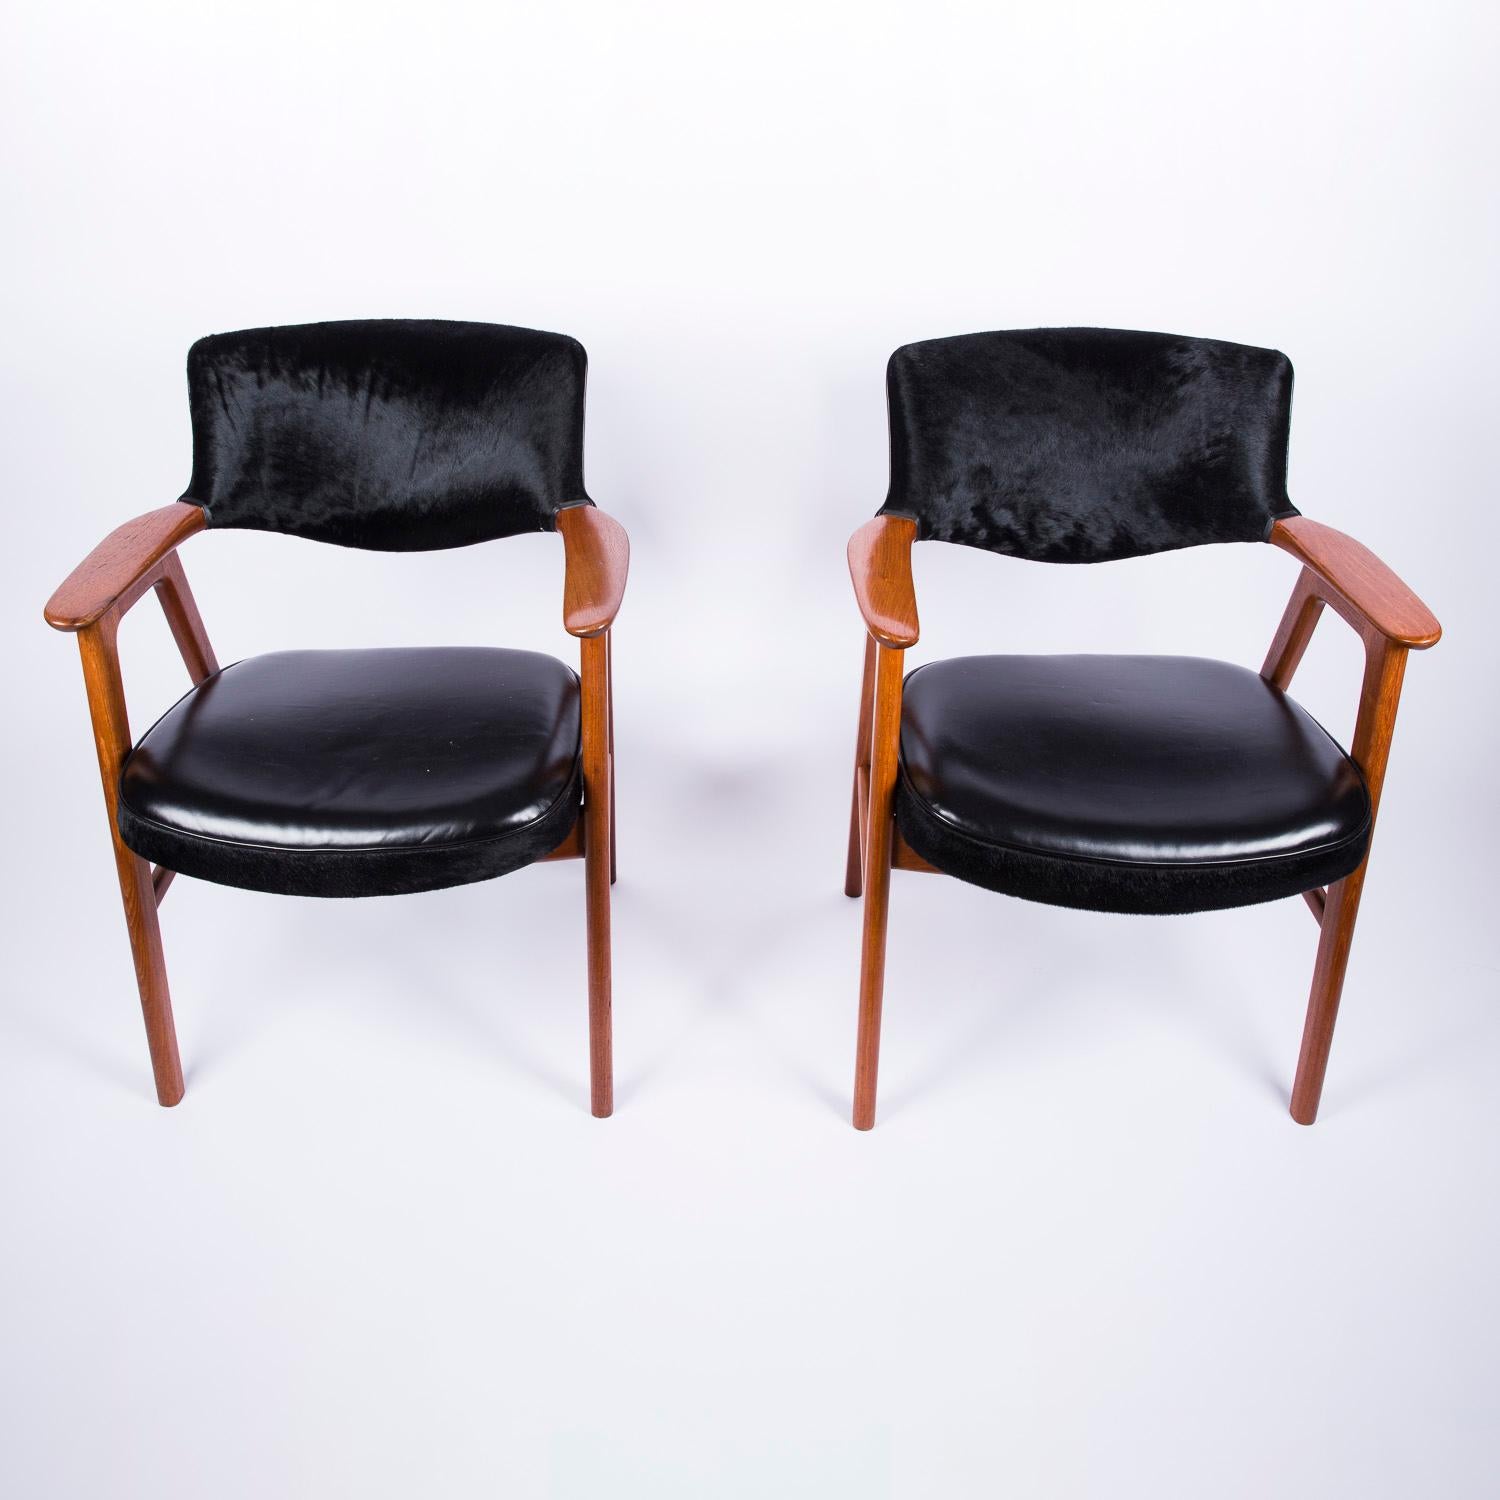 Paire de fauteuils des années 1960 par Erik Kierkegaard pour Høng Stolefabrik du Danemark.

Les sièges sont en cuir noir et les dossiers en fausse fourrure.